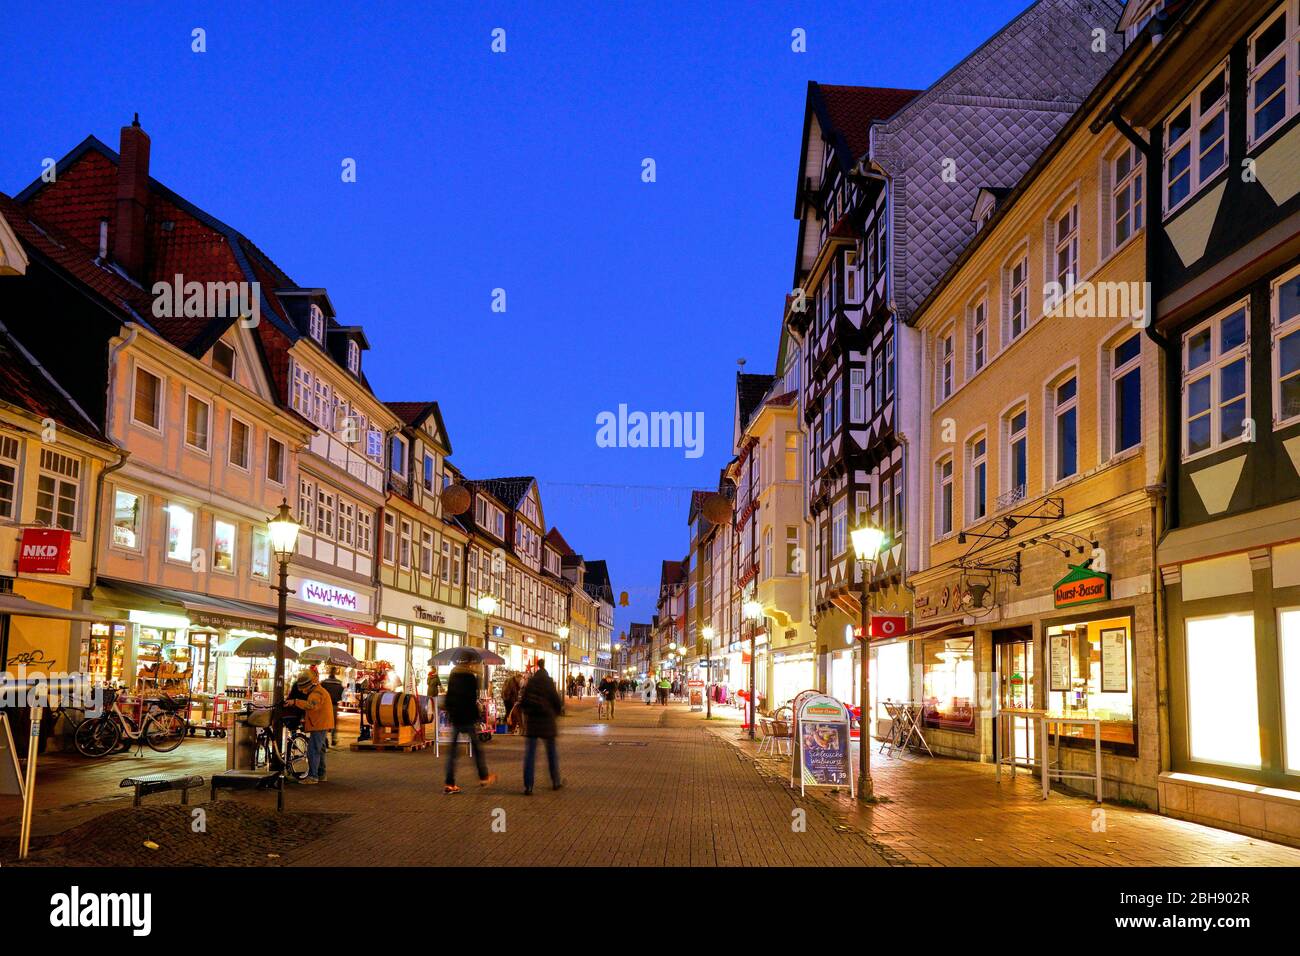 Deutschland, Niedersachsen, Wolfenbüttel, Altstadt, Lange Herzogstraße, Fußgängerzone, Fachwerkhäuser, abende, beleuchtet Foto Stock